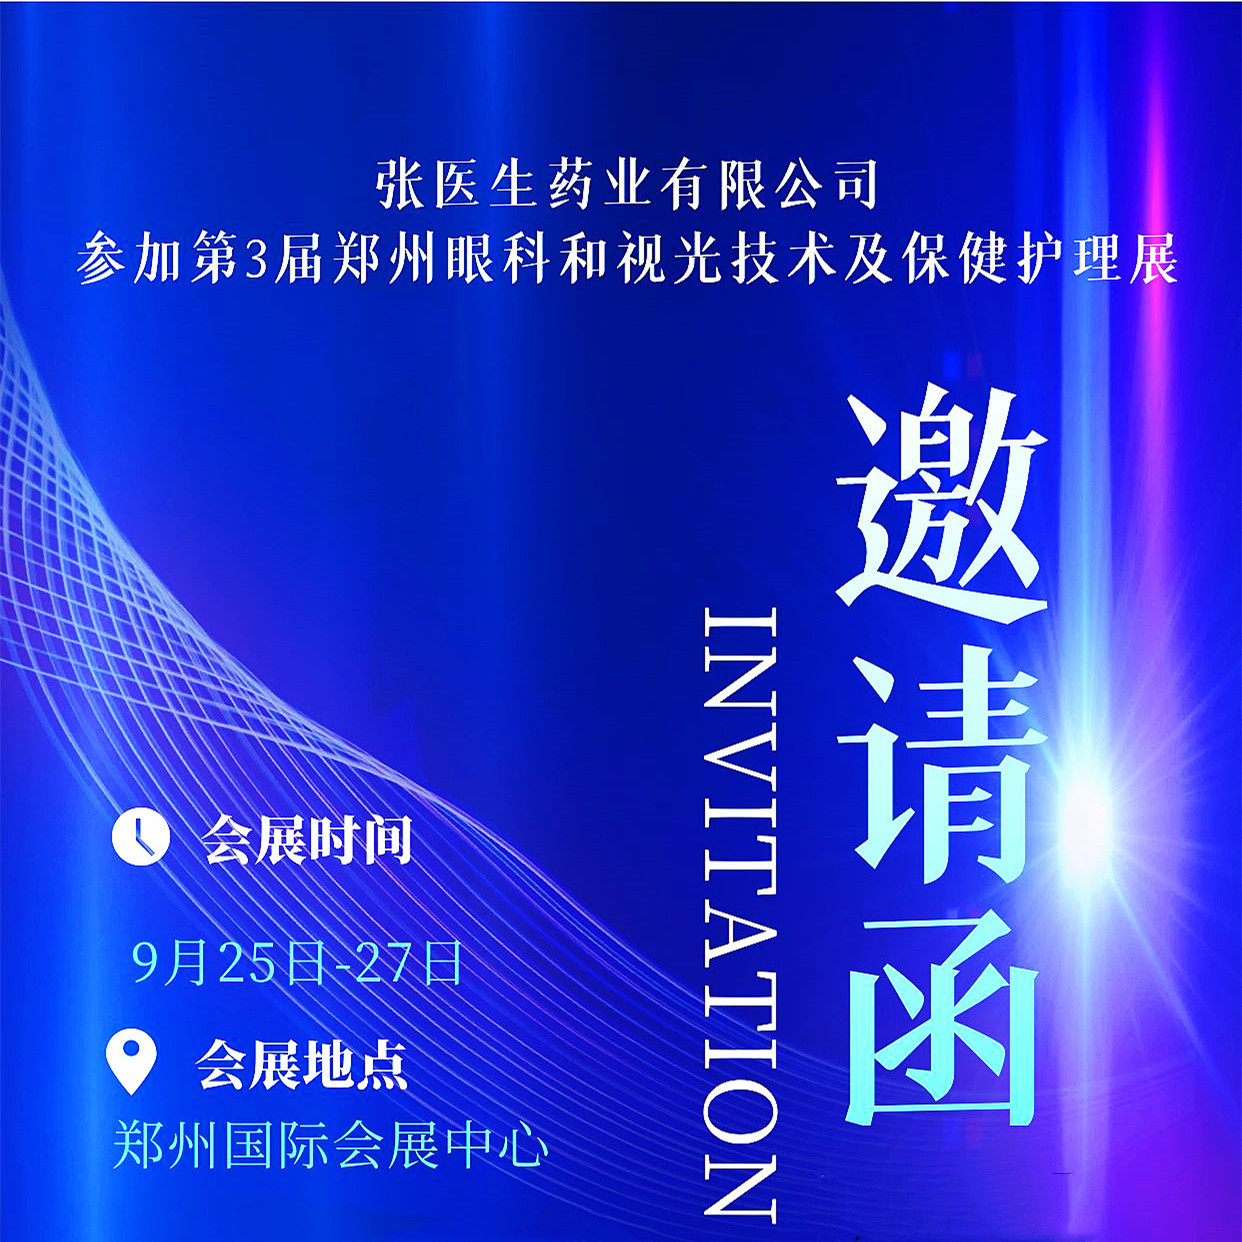 张医生药业将参加第3届郑州眼科和视光技术及保健护理展